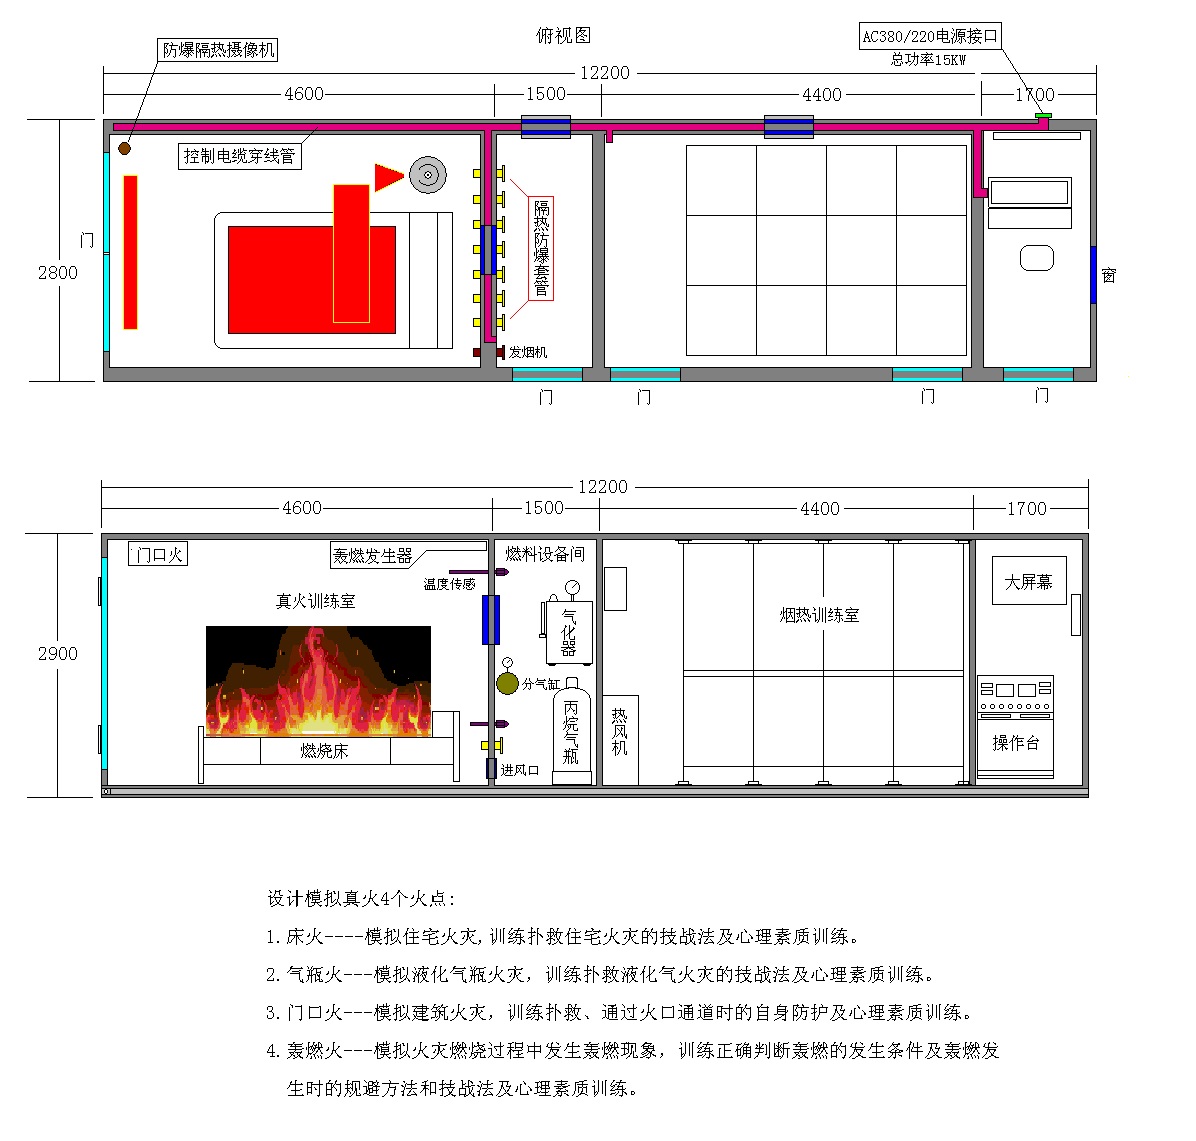 消防集装箱真火模拟训练设备生产厂家锦州明日科技